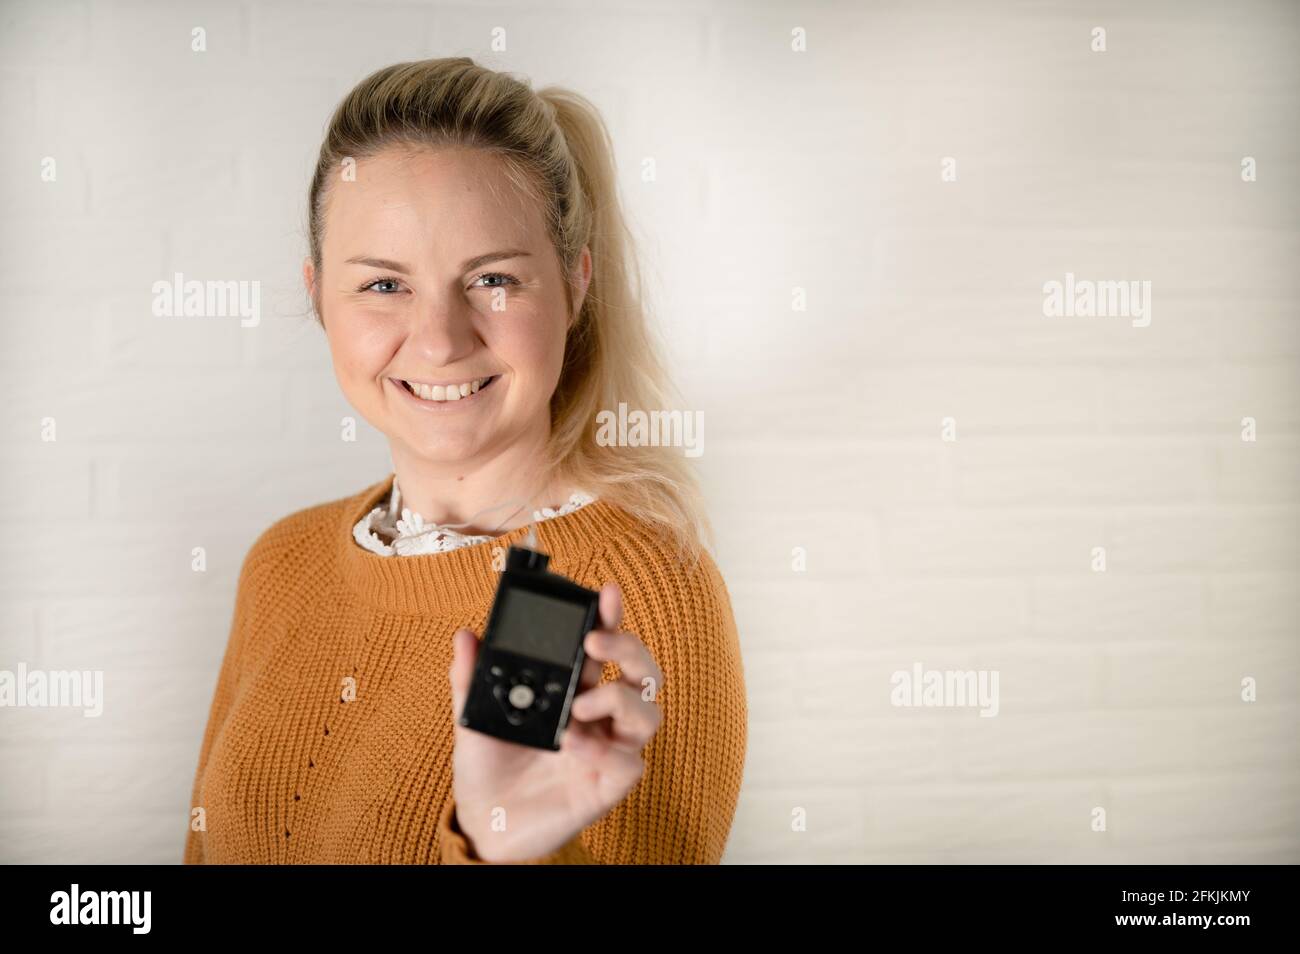 Attraktive blonde Frau hält ihre Insulinpumpe - Behandlung von Diabetes Mit Technologie Stockfoto